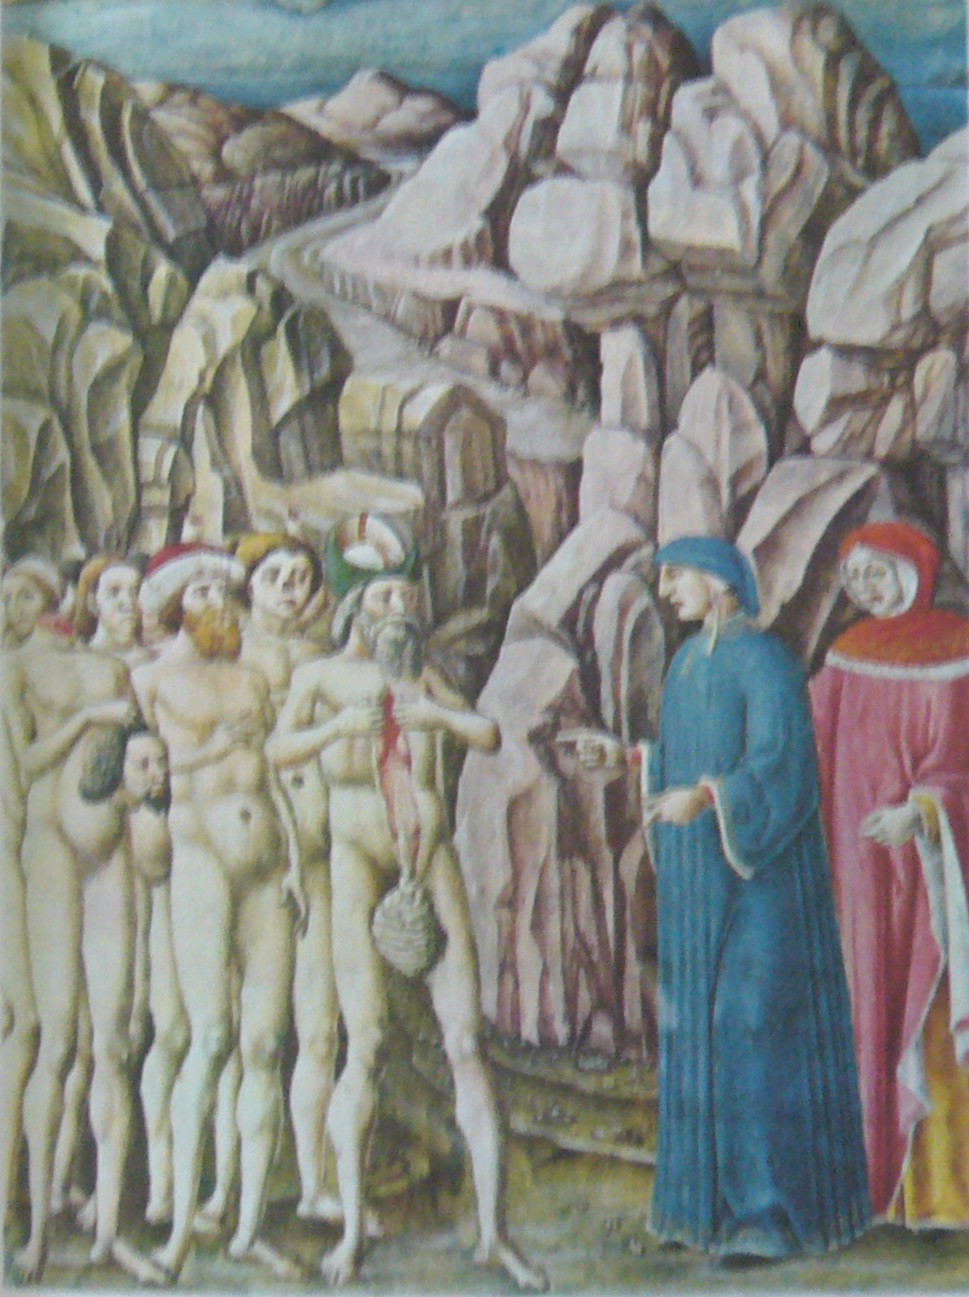 SEMĂNĂTORII DE VRAJBĂ [Miniatura ferrareza, 1474-1482]